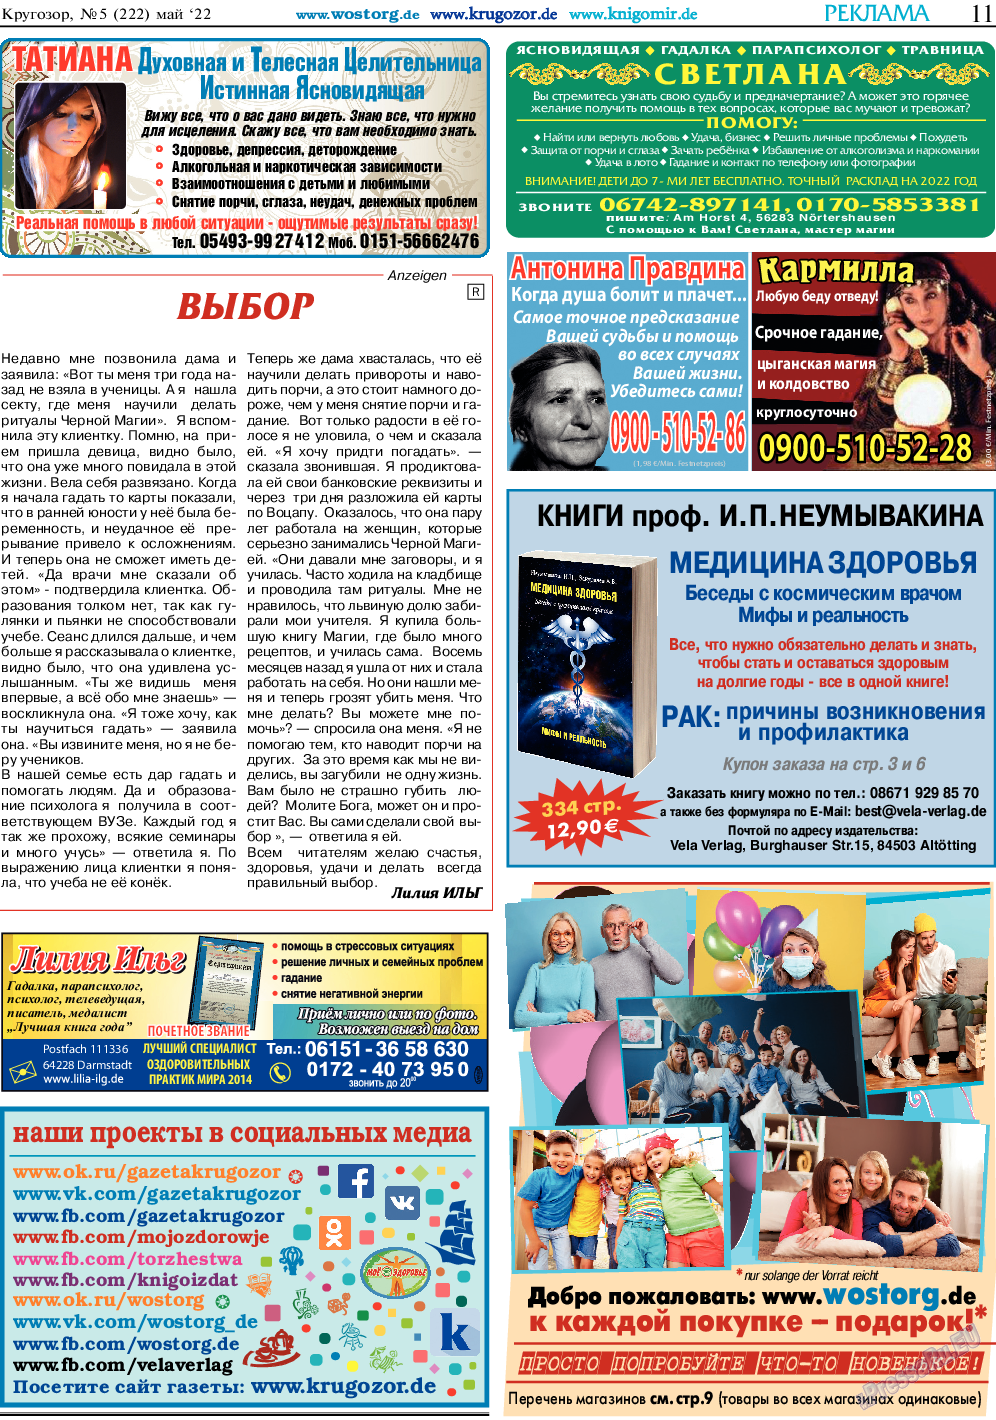 Кругозор, газета. 2022 №5 стр.11